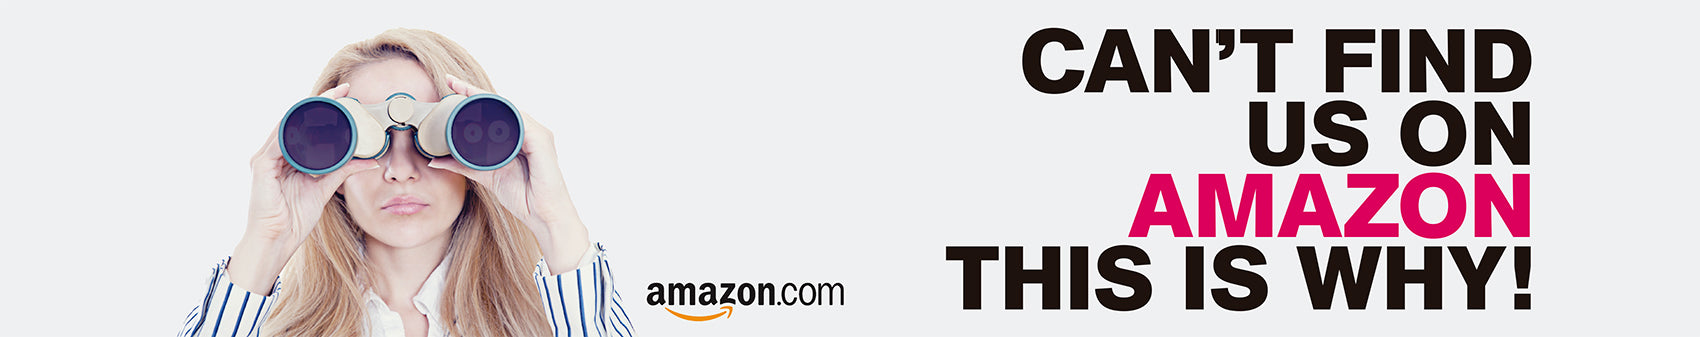 Carousel-Amazon.jpg